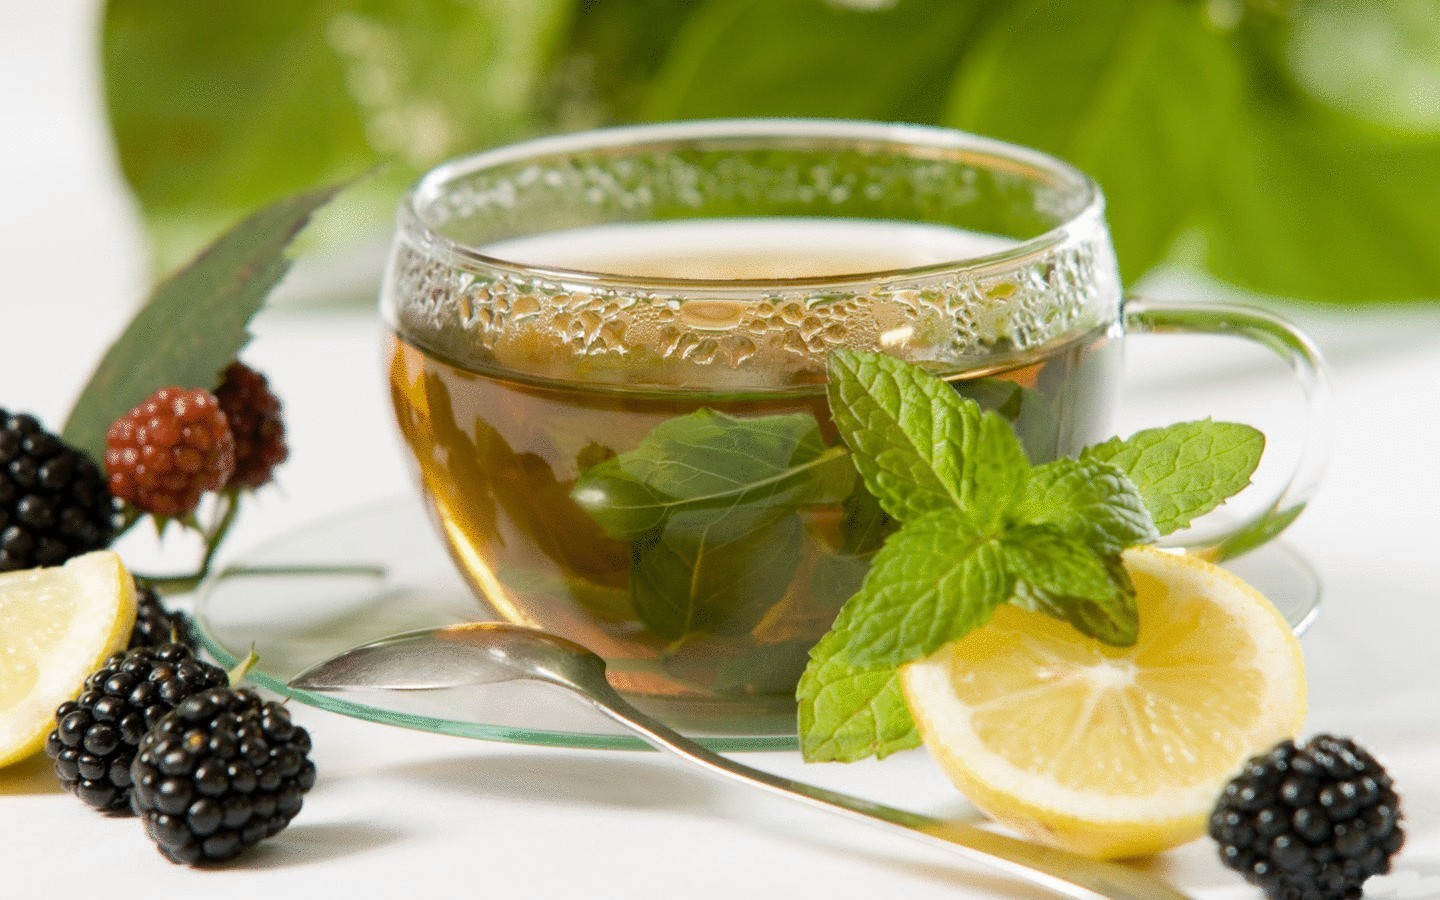 Пейте чай обязательно - он не только тонизирует, но и дарит здоровье